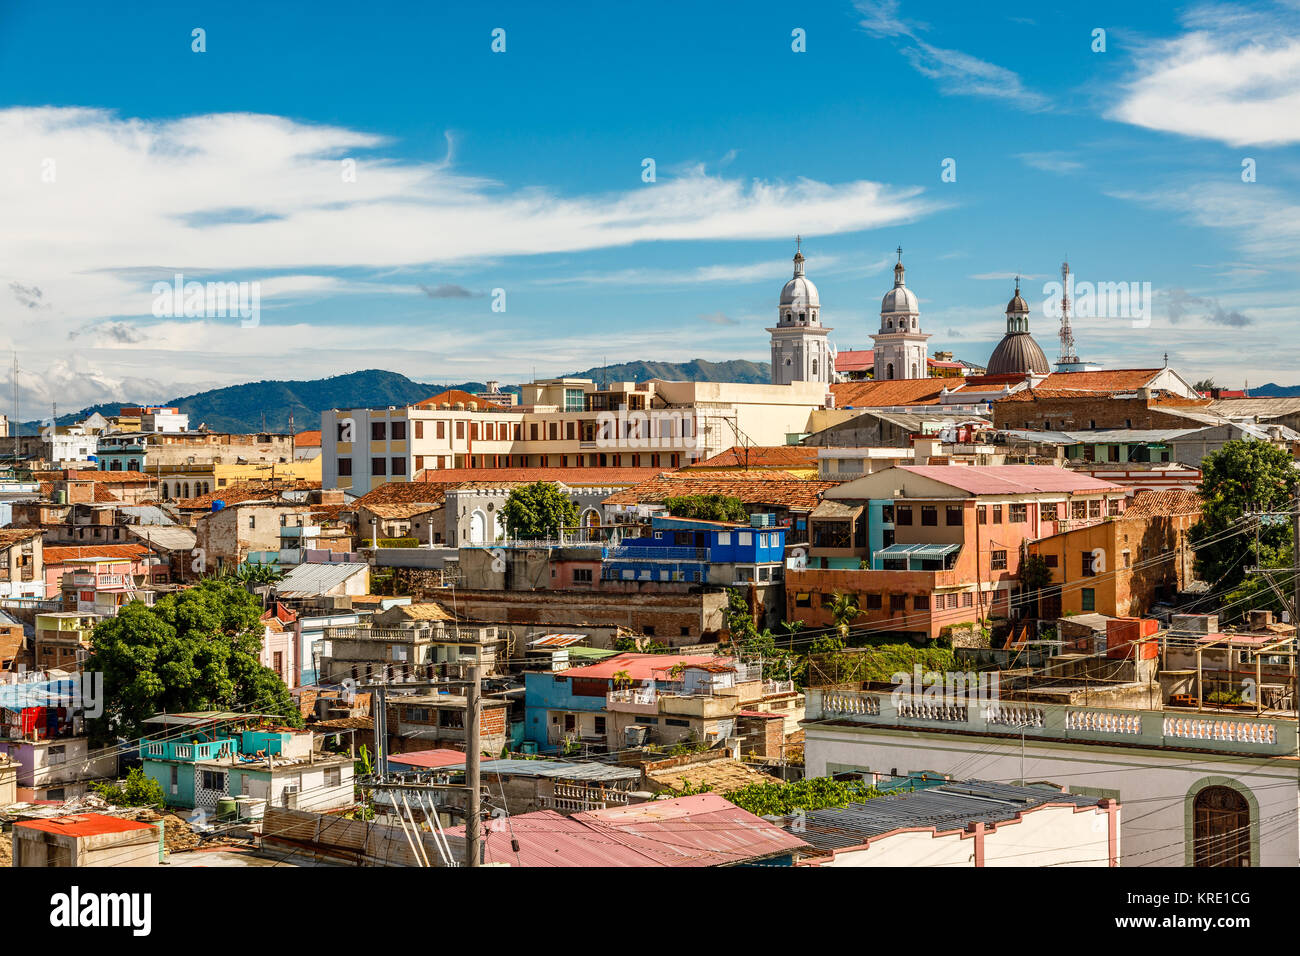 Panorama del centro storico con case vecchie e povere bidonville blocchi, Santiago de Cuba, Cuba Foto Stock